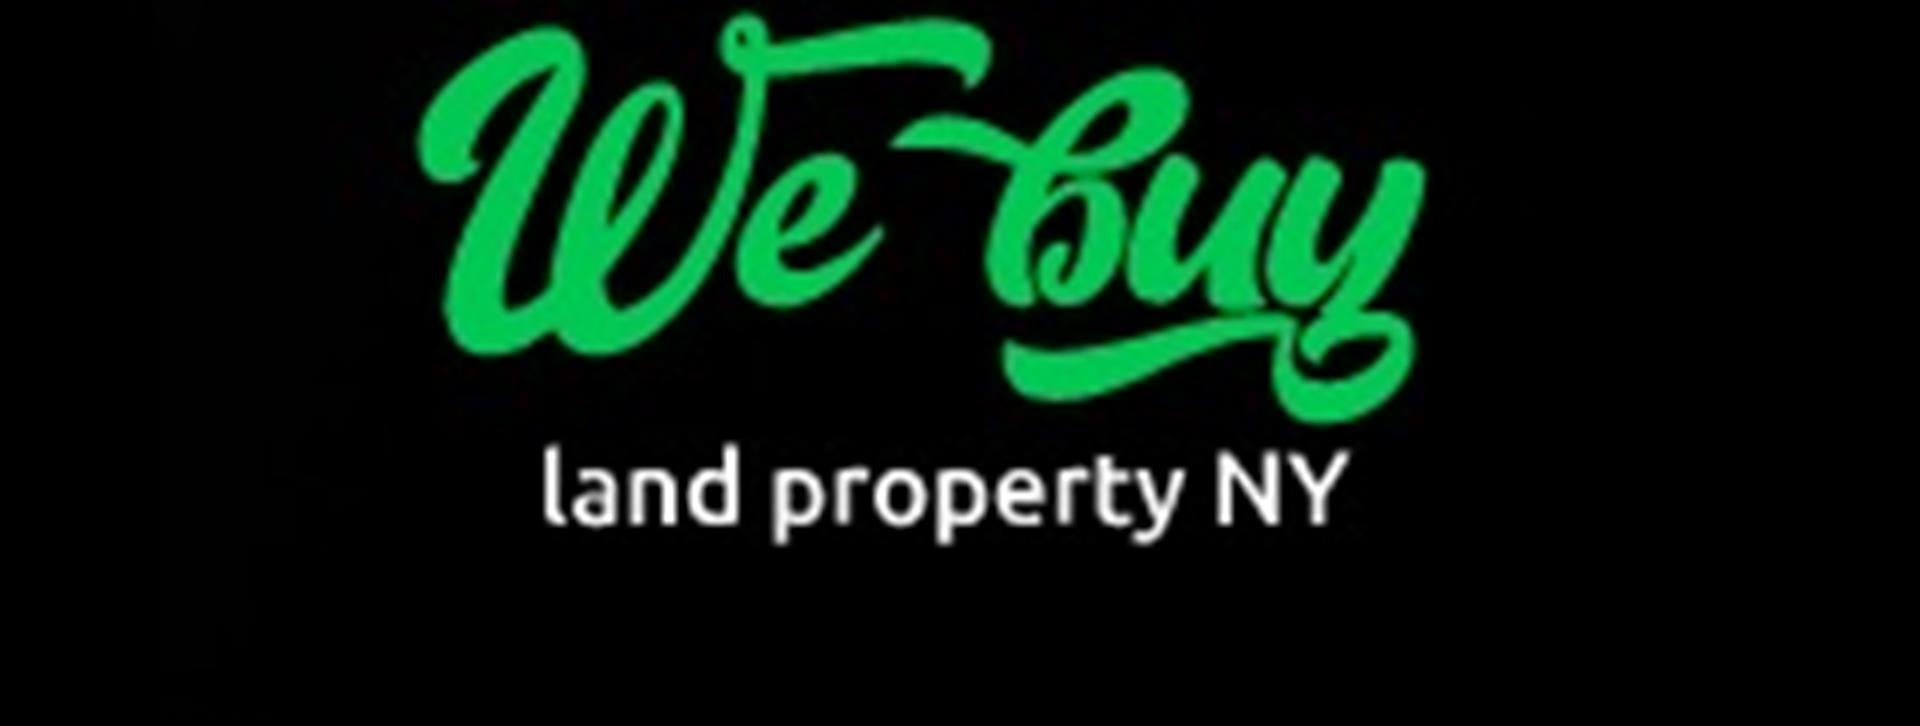 We buy Land Property NY